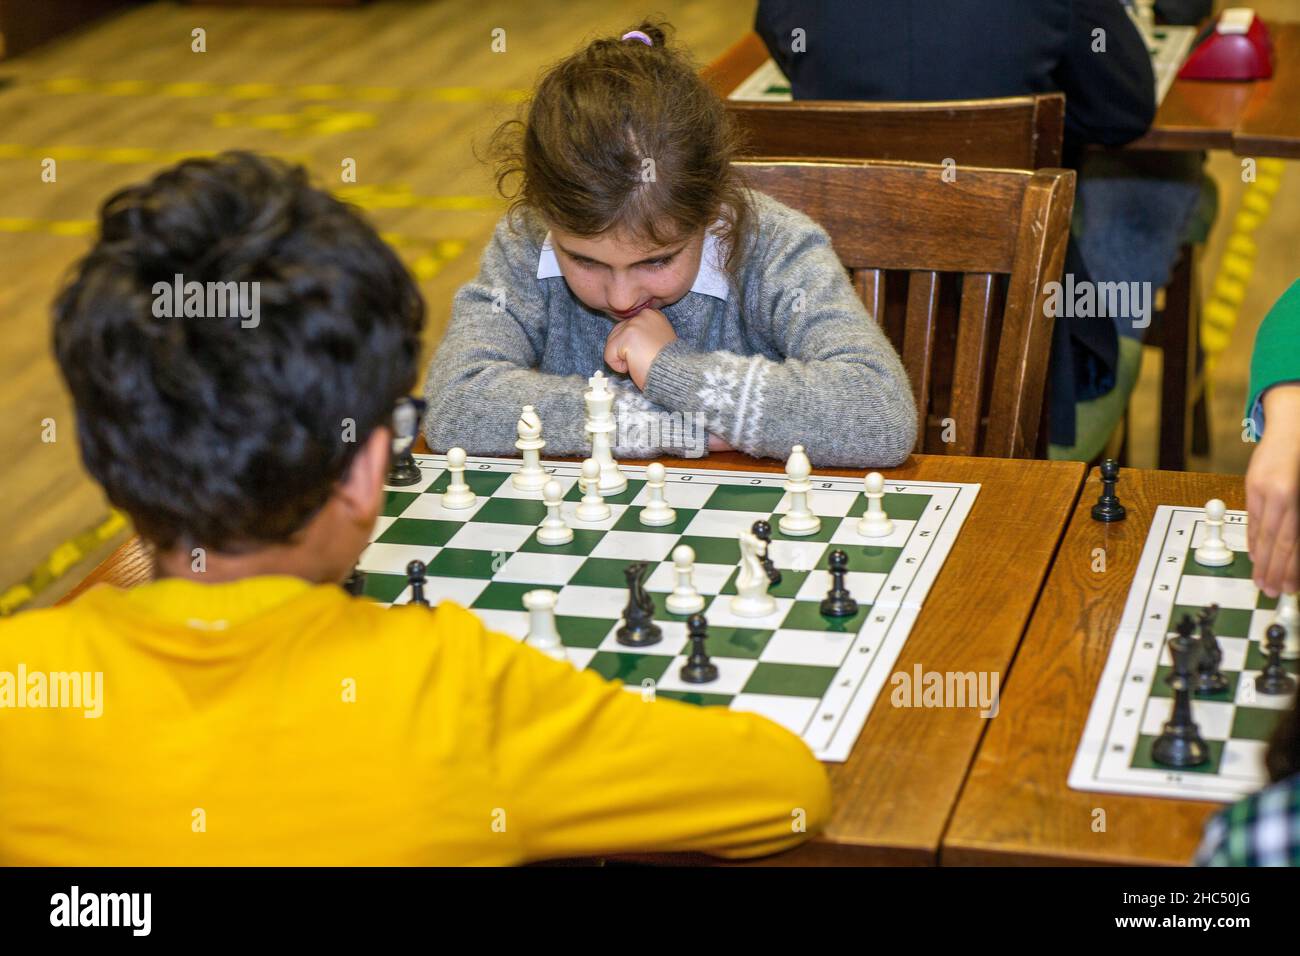 Intelligente Spiele. Ein Kind spielt Schach. Mädchen und ein Schachbrett. Strategie. Logisches Denken. Kleines Mädchen spielt Schach Stockfoto